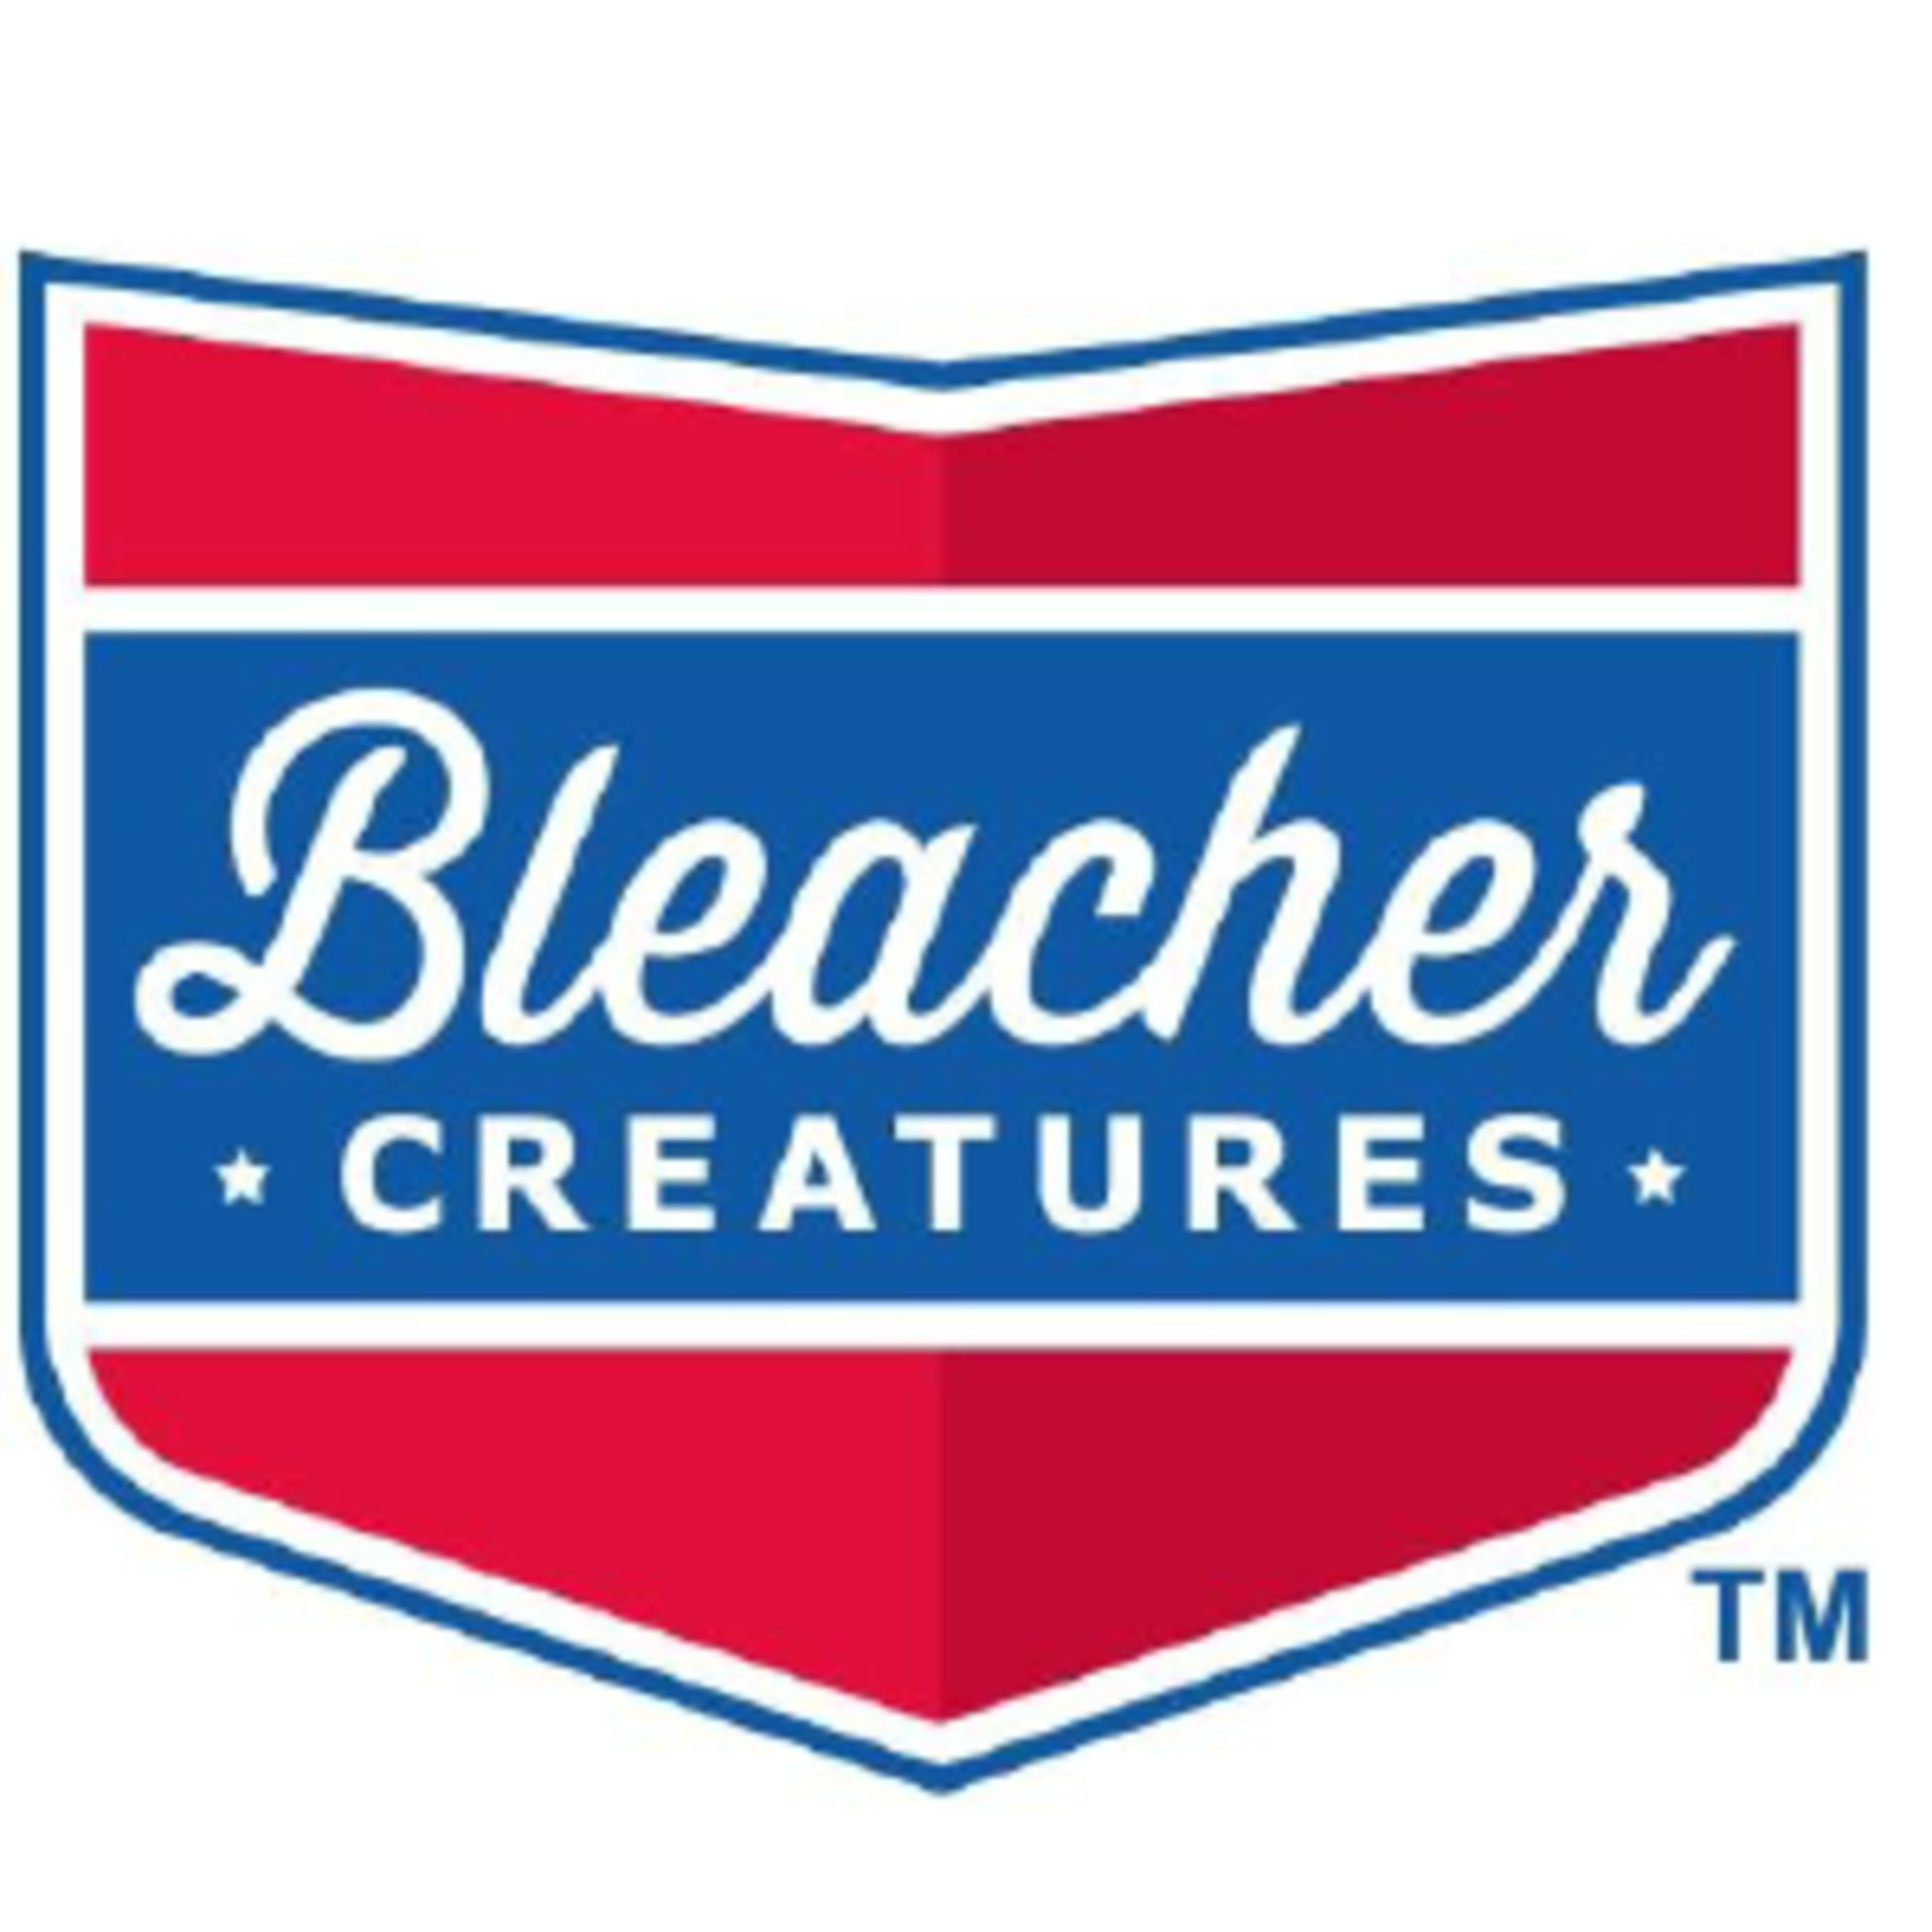 Bleacher Creatures Code